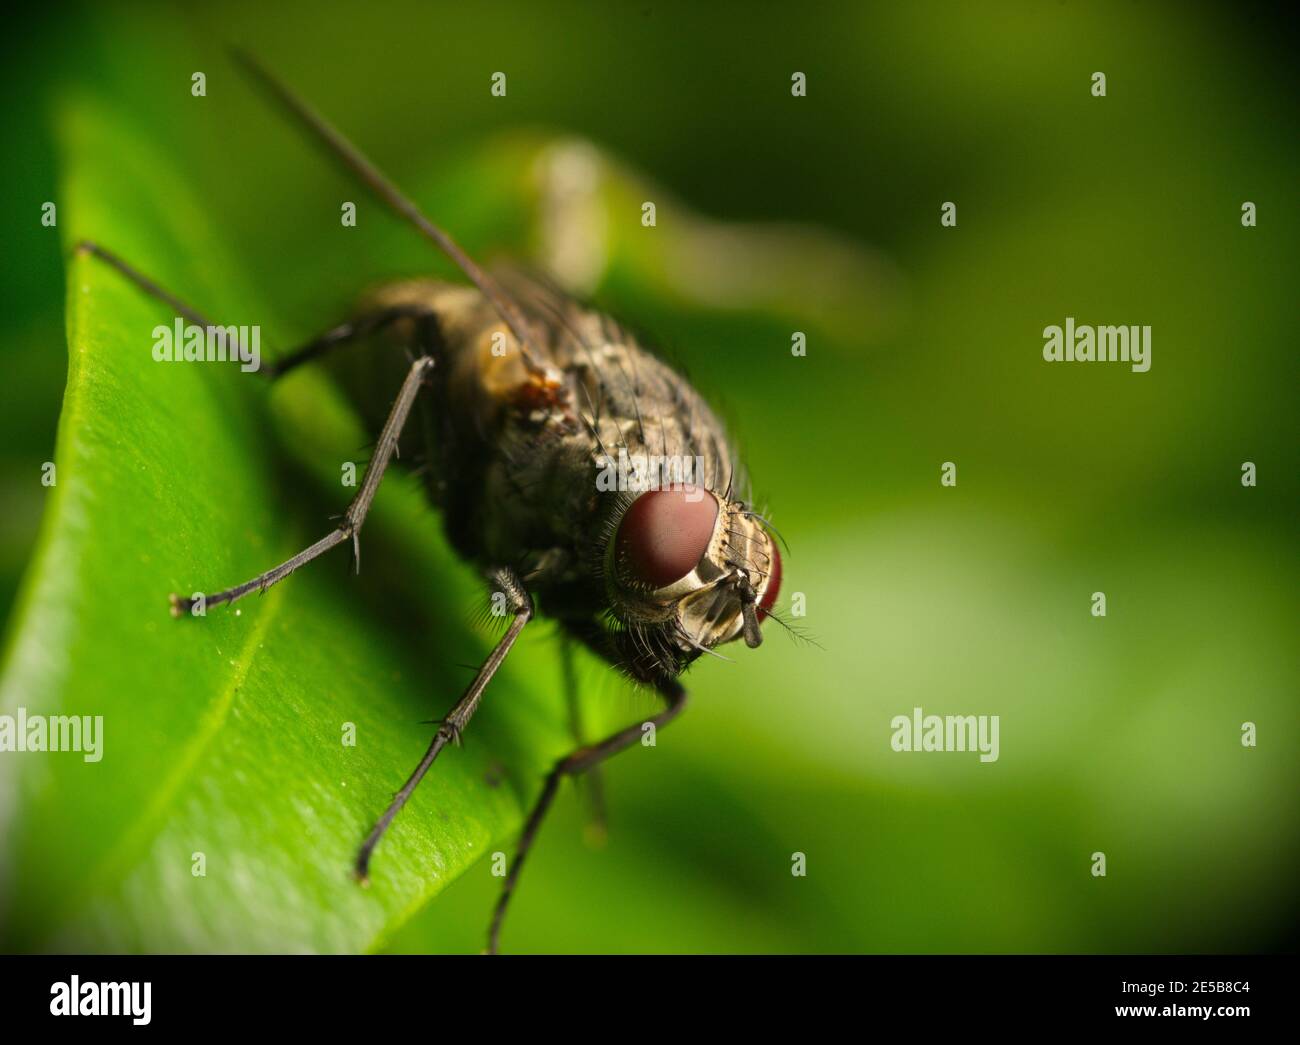 Detaillierte Makrofotografie Nahaufnahme der Fliege mit roten Augen auf grünem Blatt, zeigt detaillierte Kopf und Augen und künstlerische Tiefe f Feld Hintergrund Stockfoto